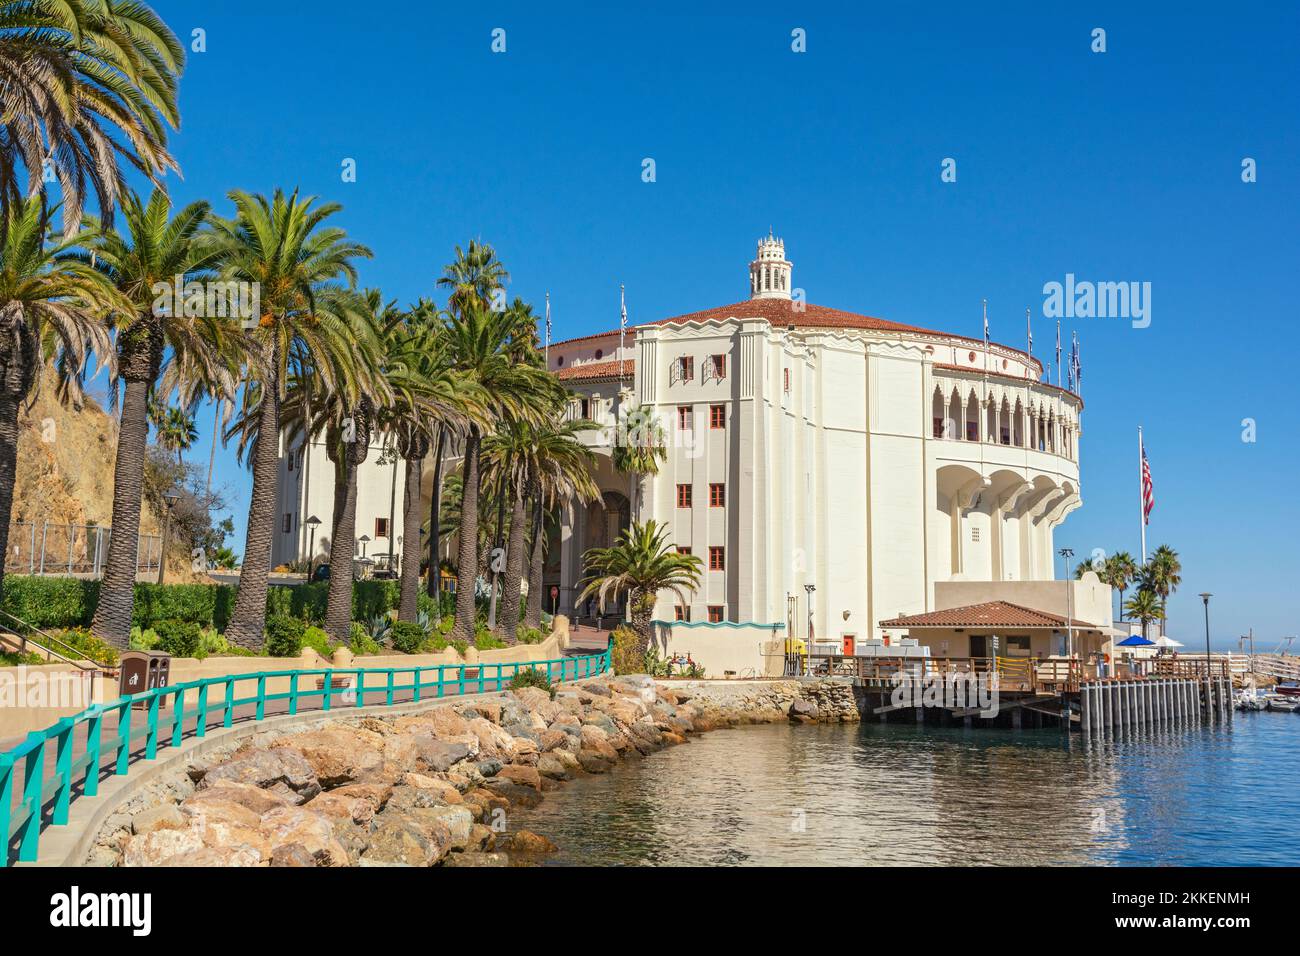 California, Catalina Island, Via Casino, Avalon Harbor, Casino, opened 1929 Stock Photo